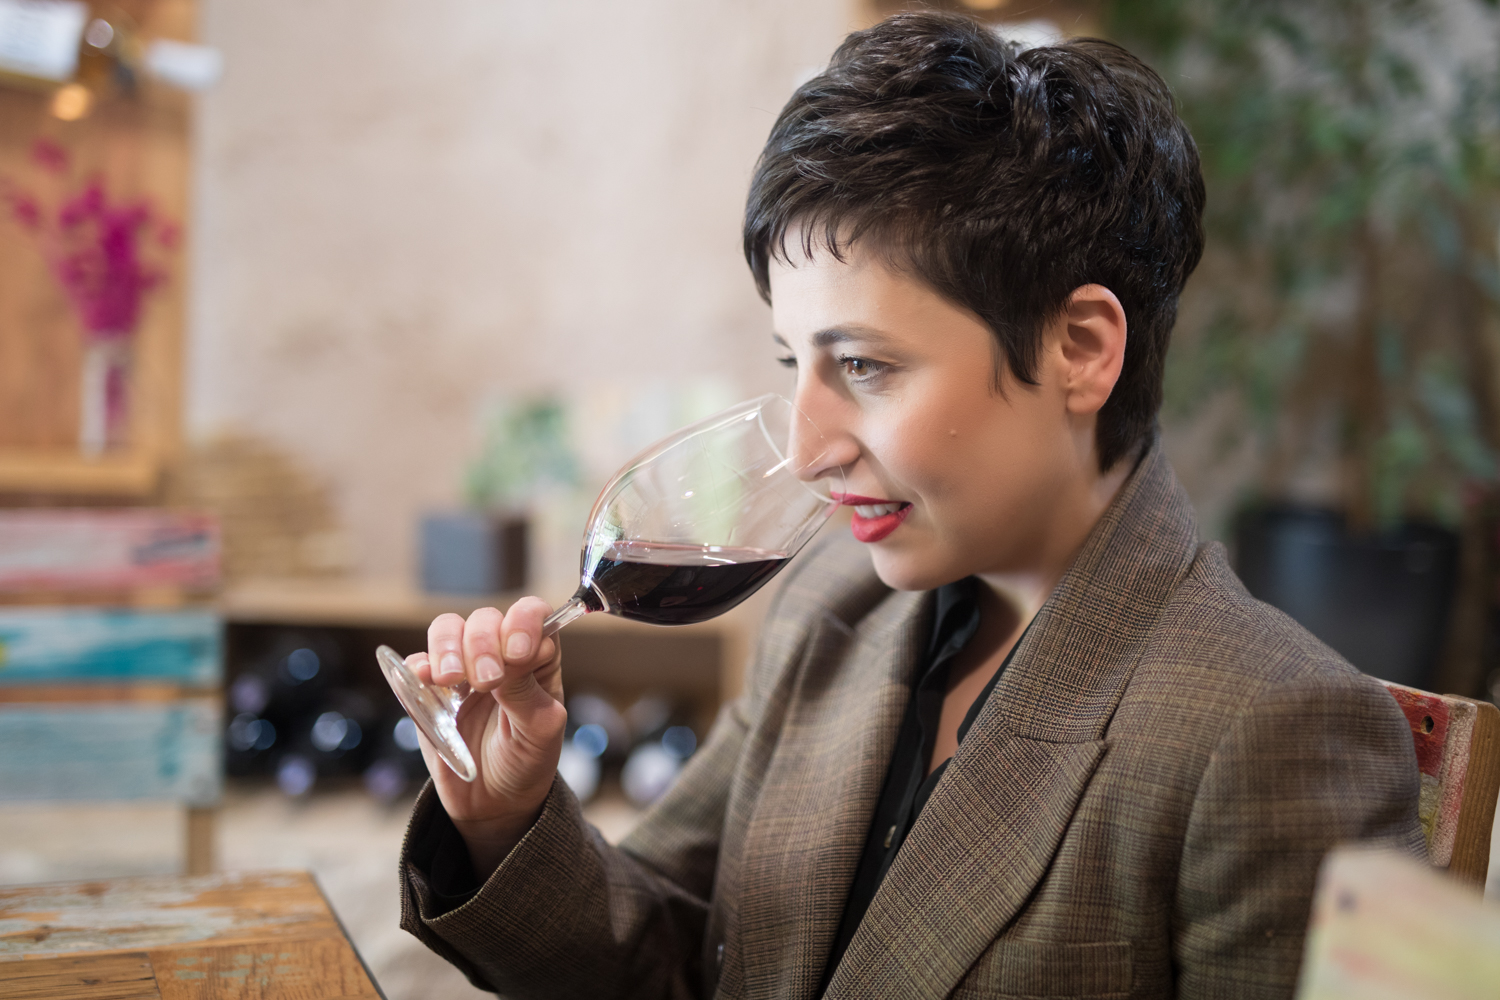 Լիլիա Խաչատրյան. «Ուզում եմ արենի նուարից մեծ գինի պատրաստել»